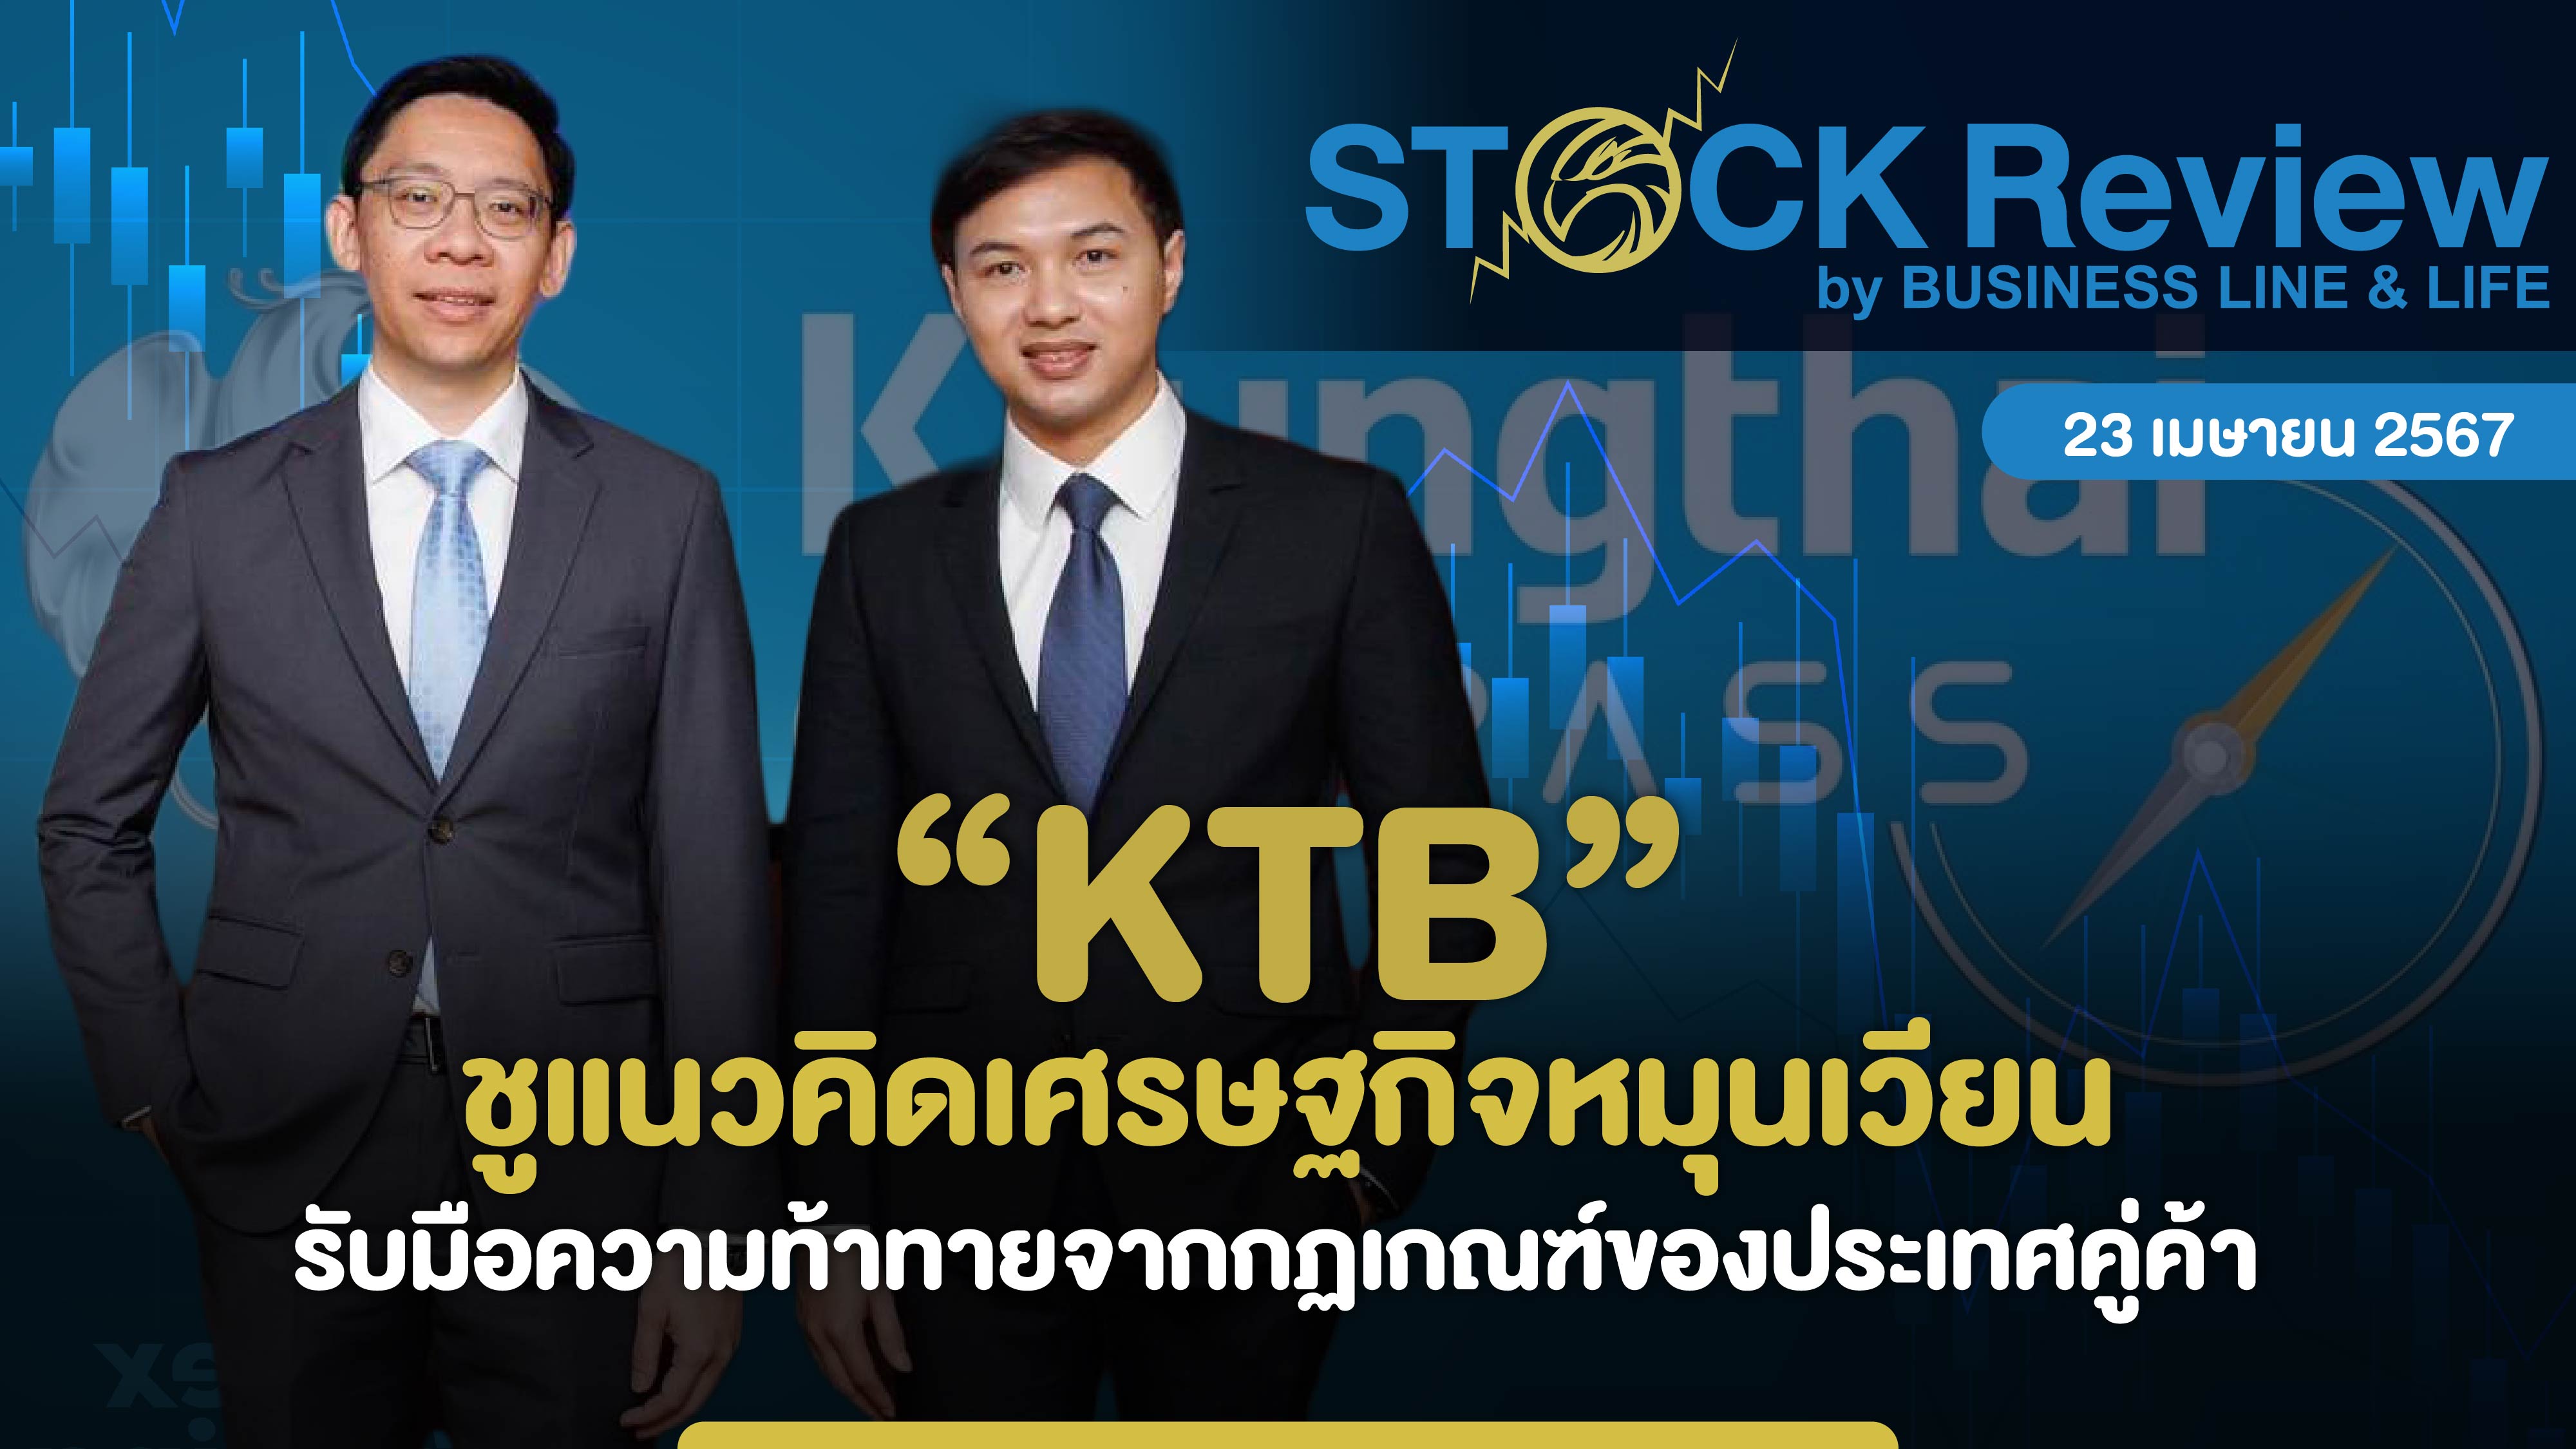 “KTB” ชูแนวคิดเศรษฐกิจหมุนเวียน รับมือความท้าทายจากกฏเกณฑ์ของประเทศคู่ค้า